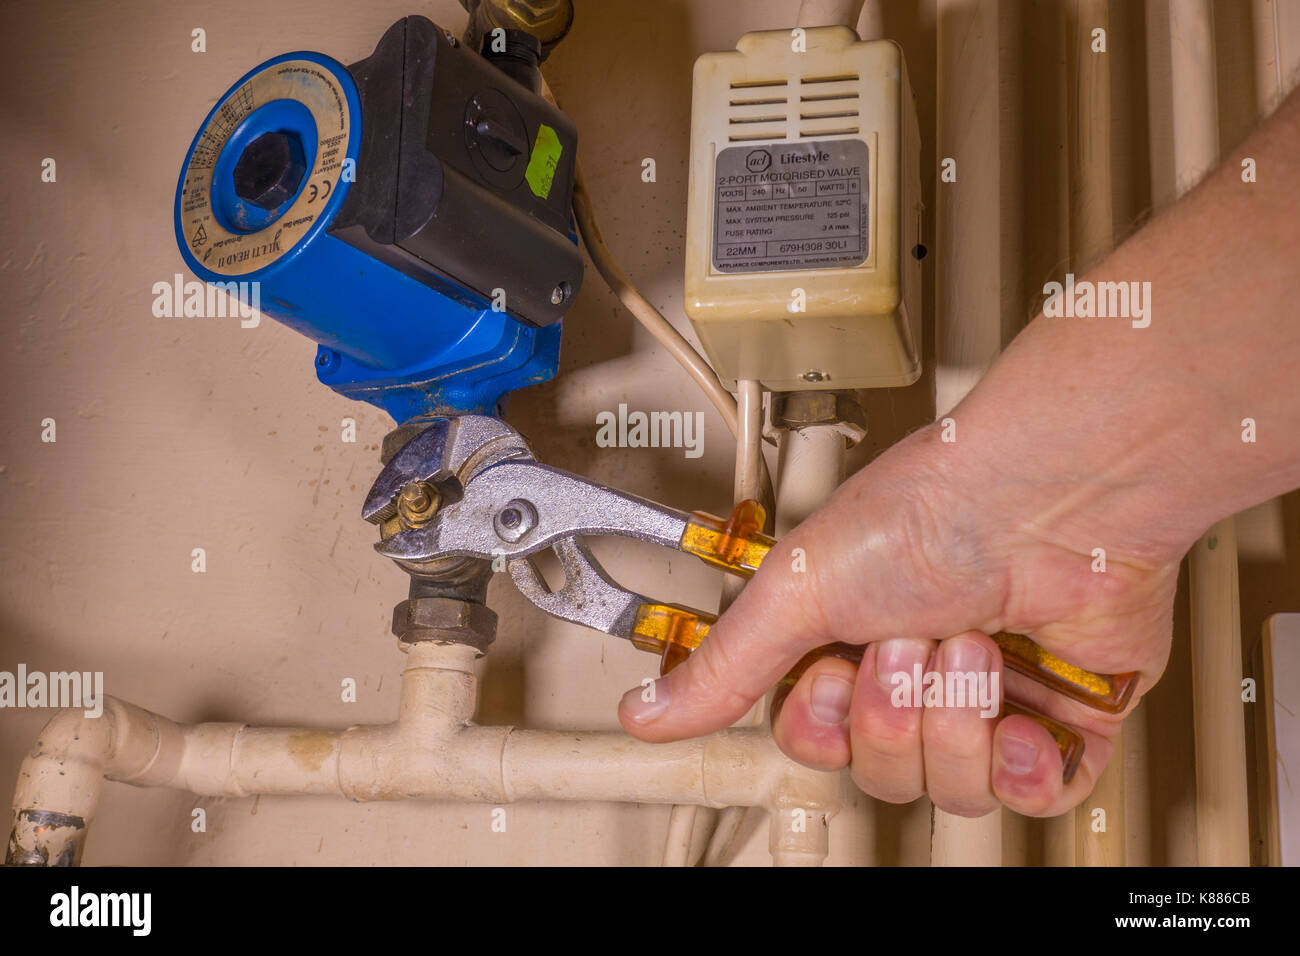 Un idraulico funzionante in un armadio di aerazione, utilizzando una chiave regolabile per lavorare su un difetto di riscaldamento centrale della pompa. Inghilterra, Regno Unito. Foto Stock